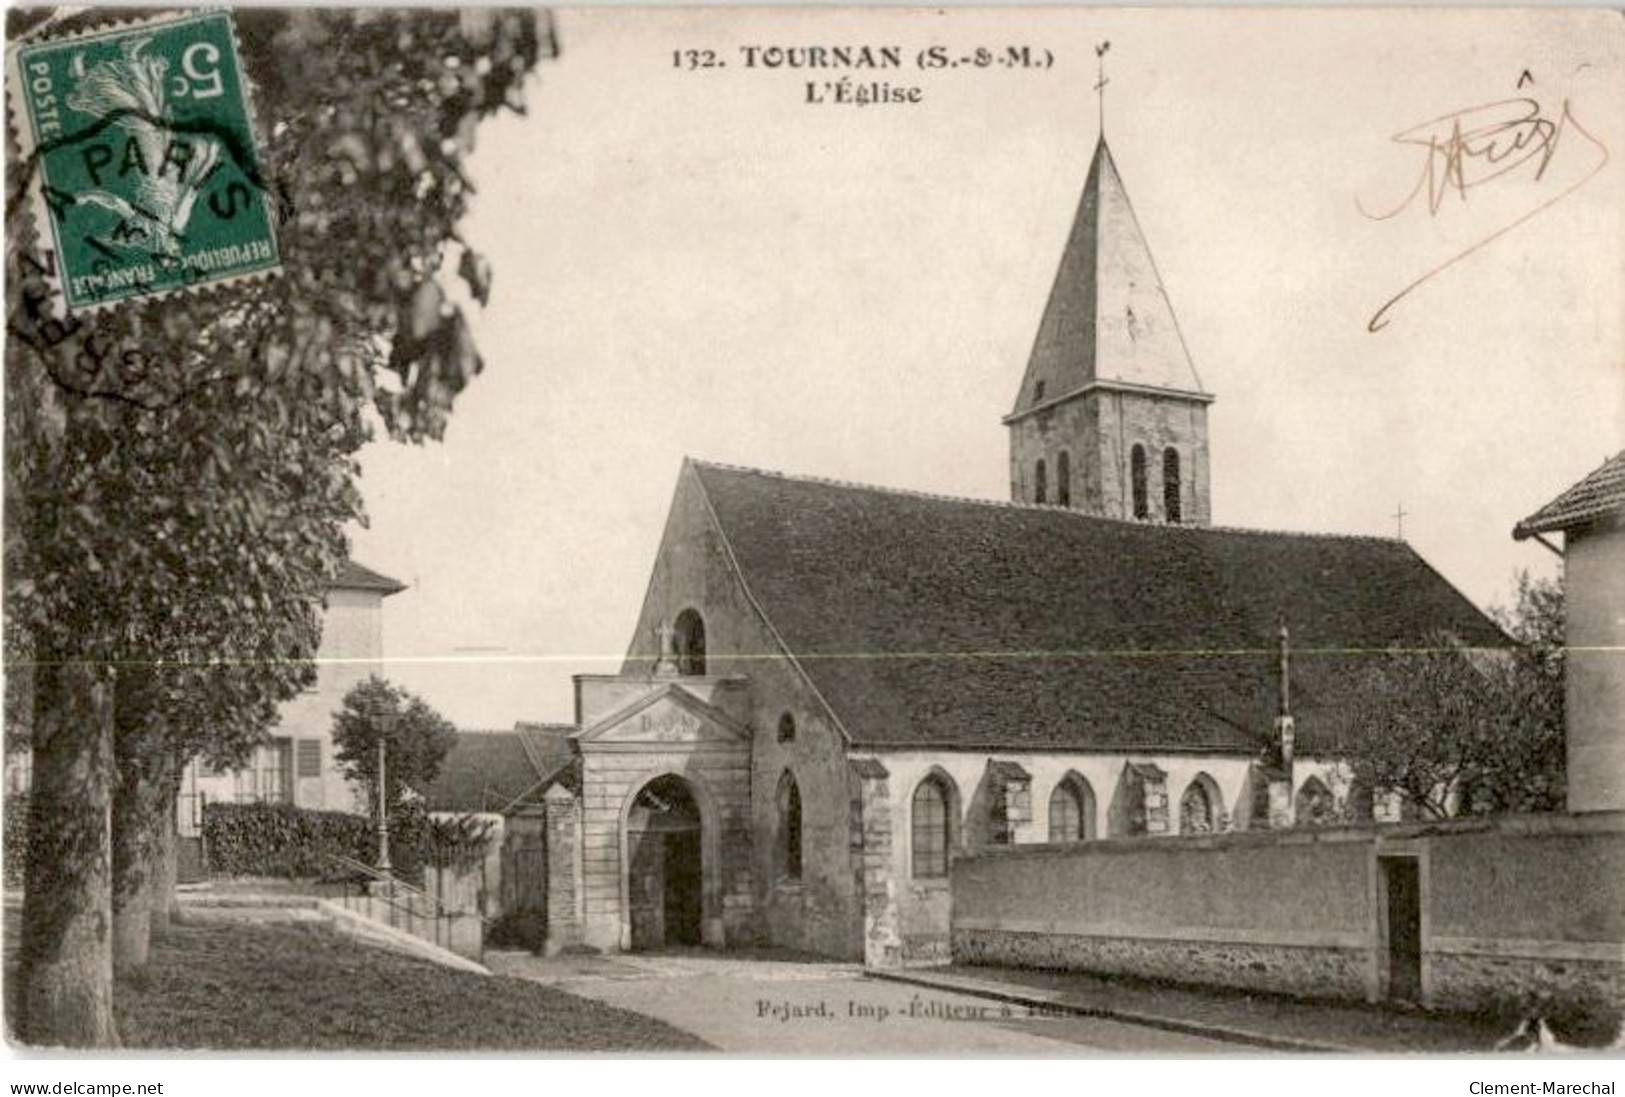 TOURNAN: L'église - état - Tournan En Brie